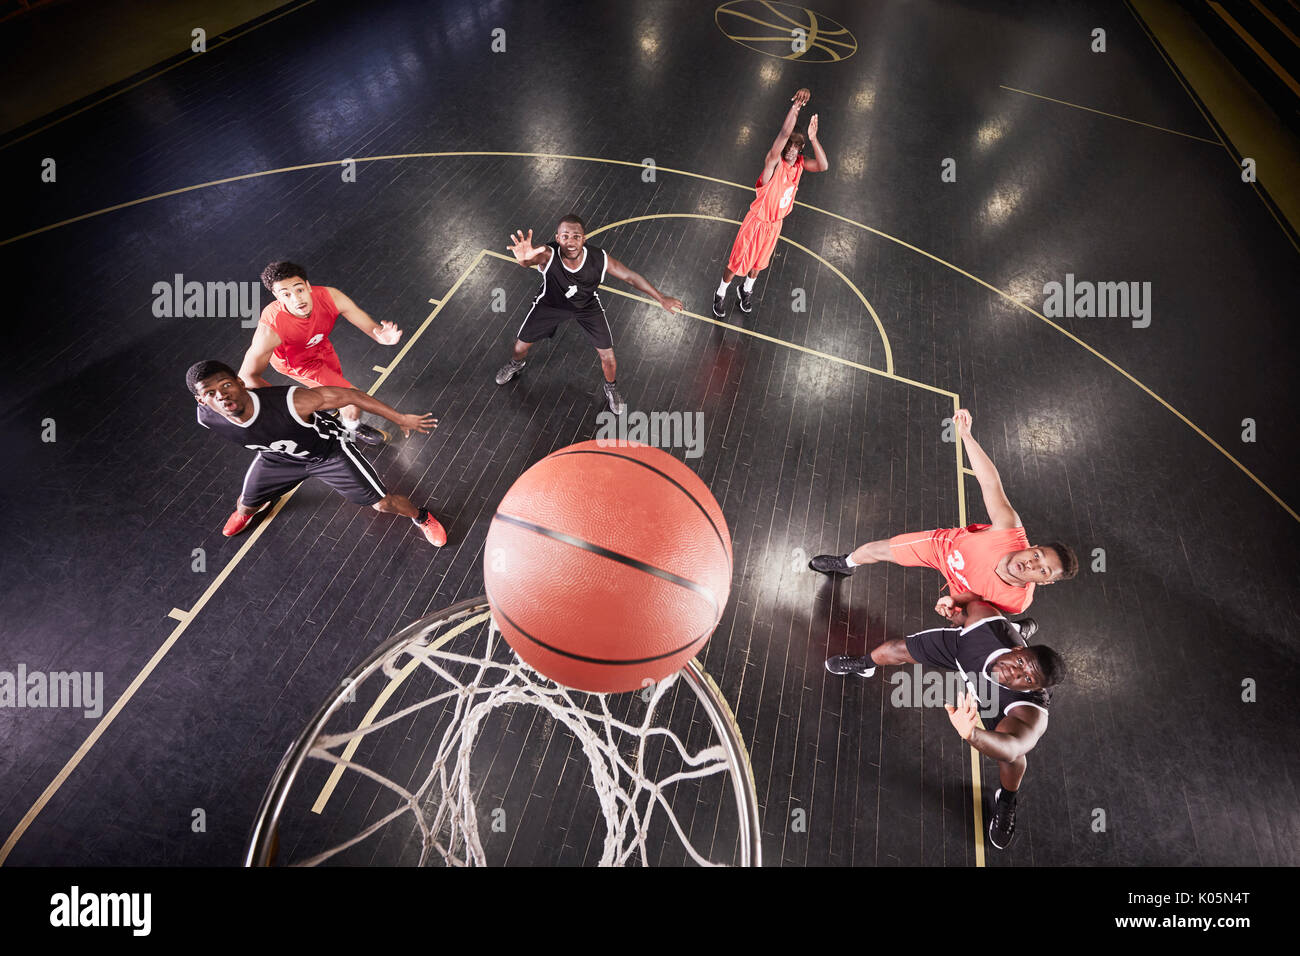 Vue aérienne du jeune joueur de basket-ball masculin de basket-ball tir coup franc jeu Banque D'Images